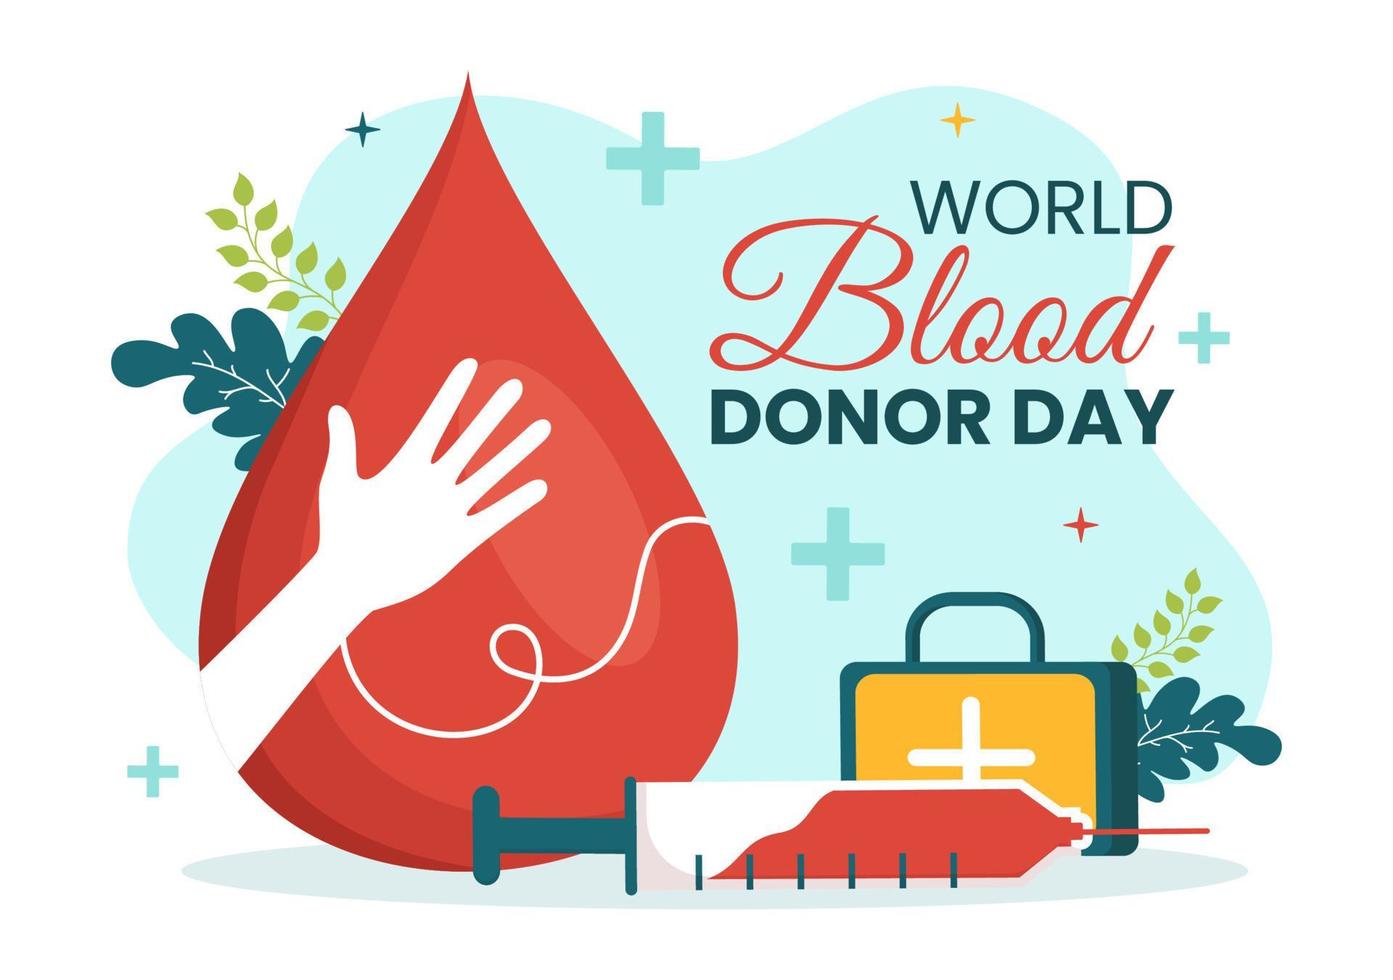 monde du sang donneur journée sur juin 14 illustration avec Humain donné sang pour donner le bénéficiaire dans enregistrer la vie plat dessin animé main tiré modèles vecteur